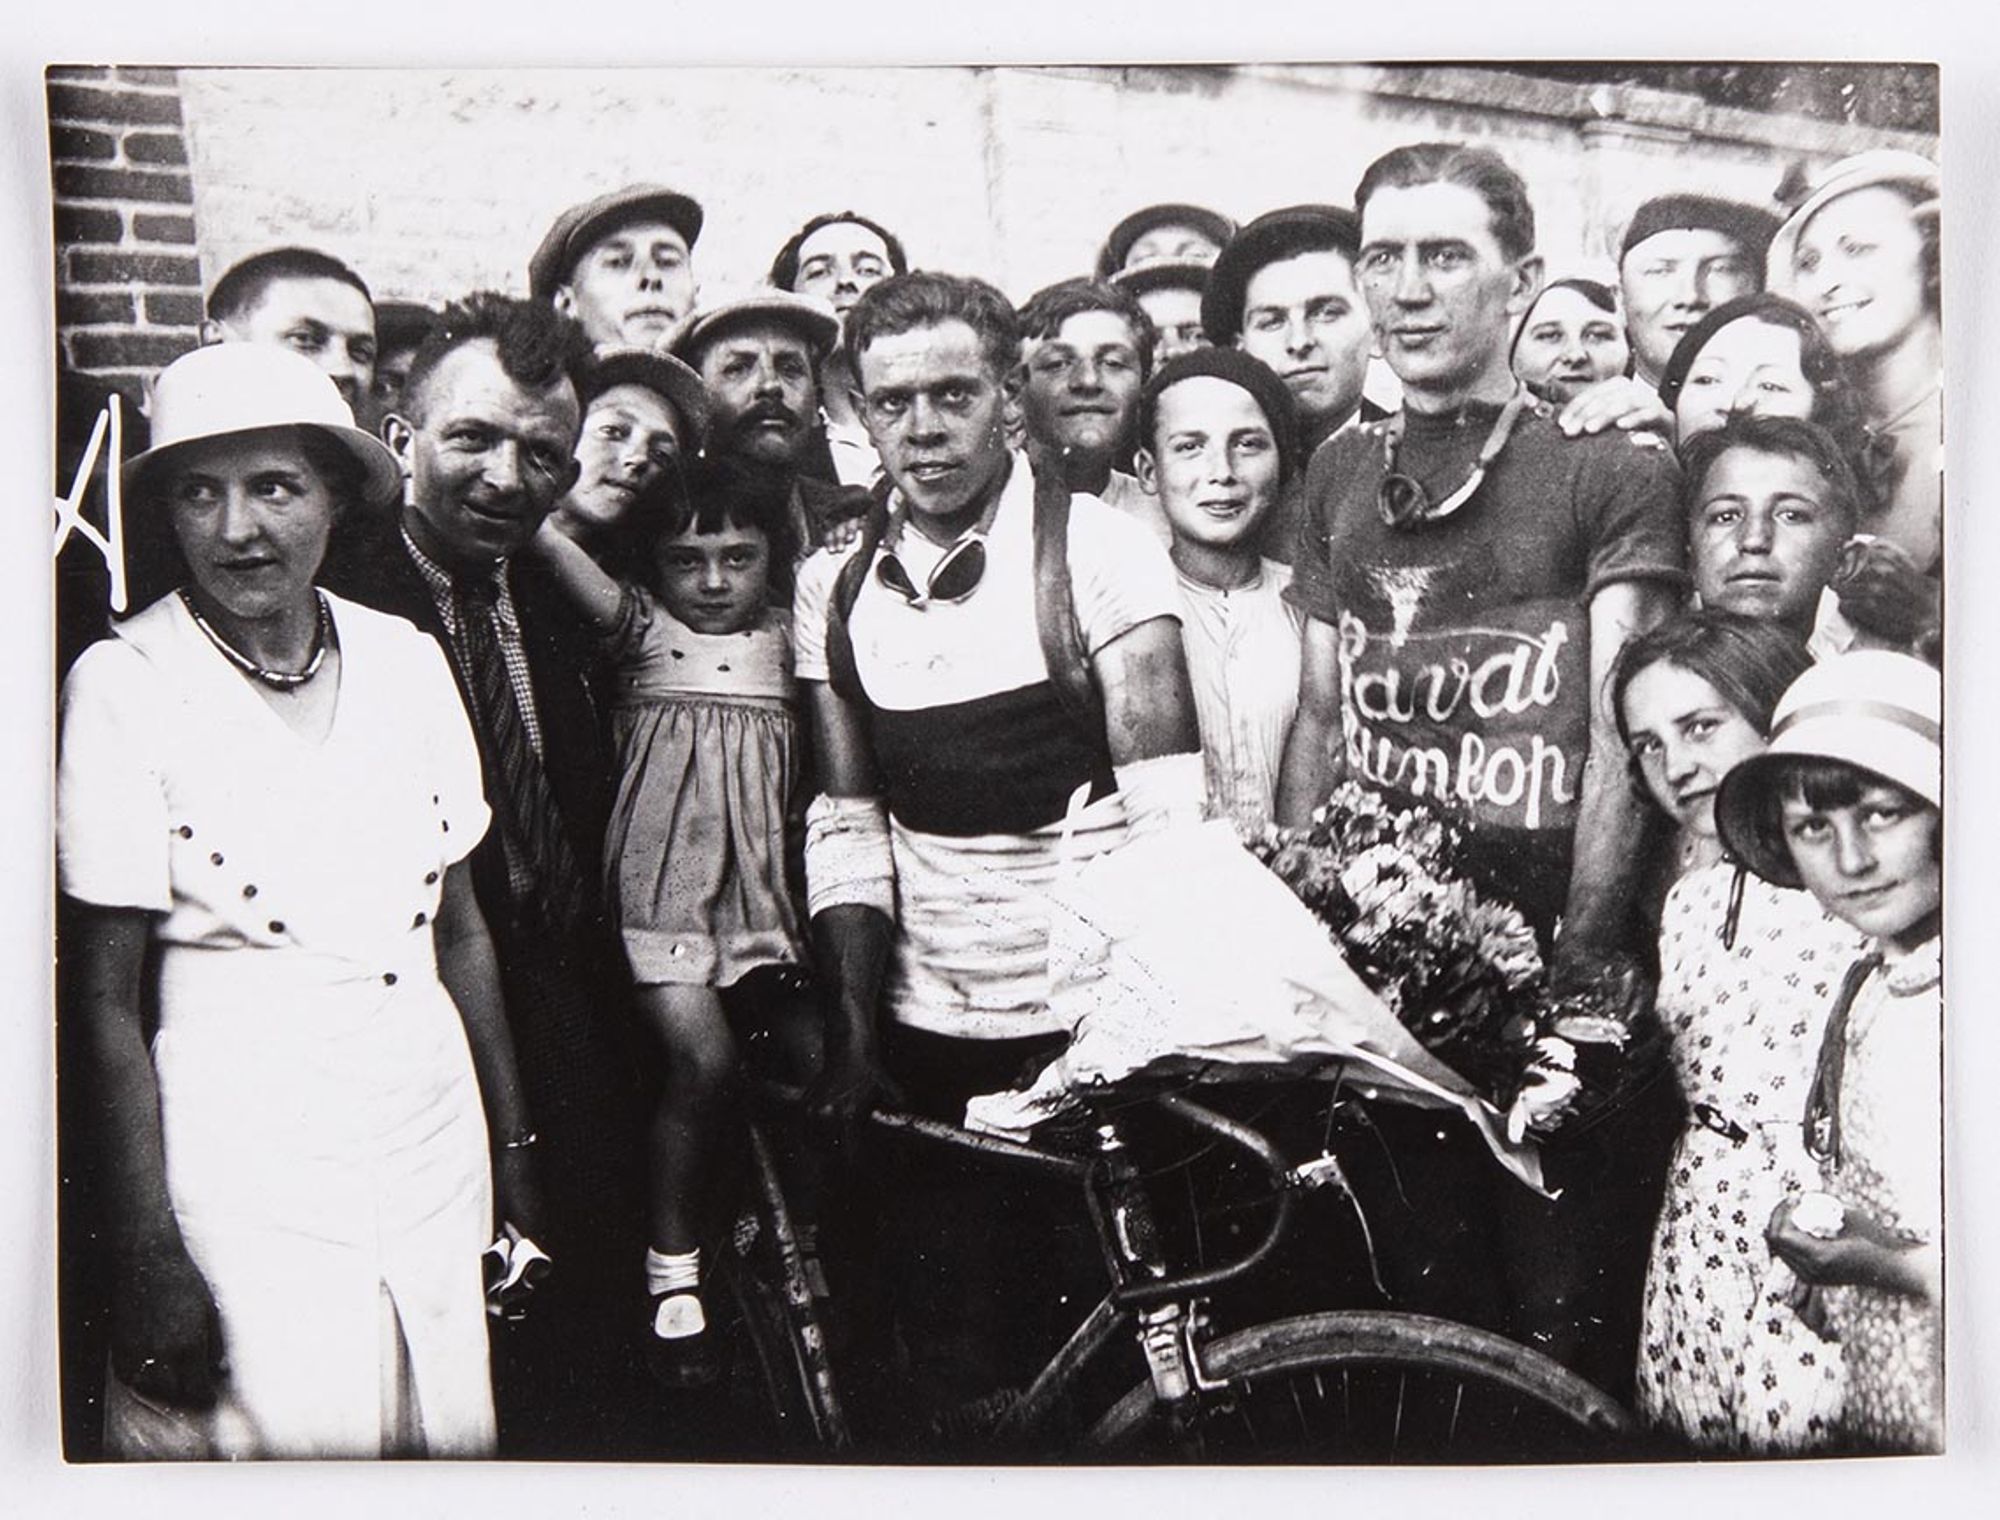 5 juin 1933. Prix Barinos. Photographie des vainqueurs : Bernard Masson, premier, et J. Krubs, deuxième, au milieu des spectateurs. Lieu à identifier.